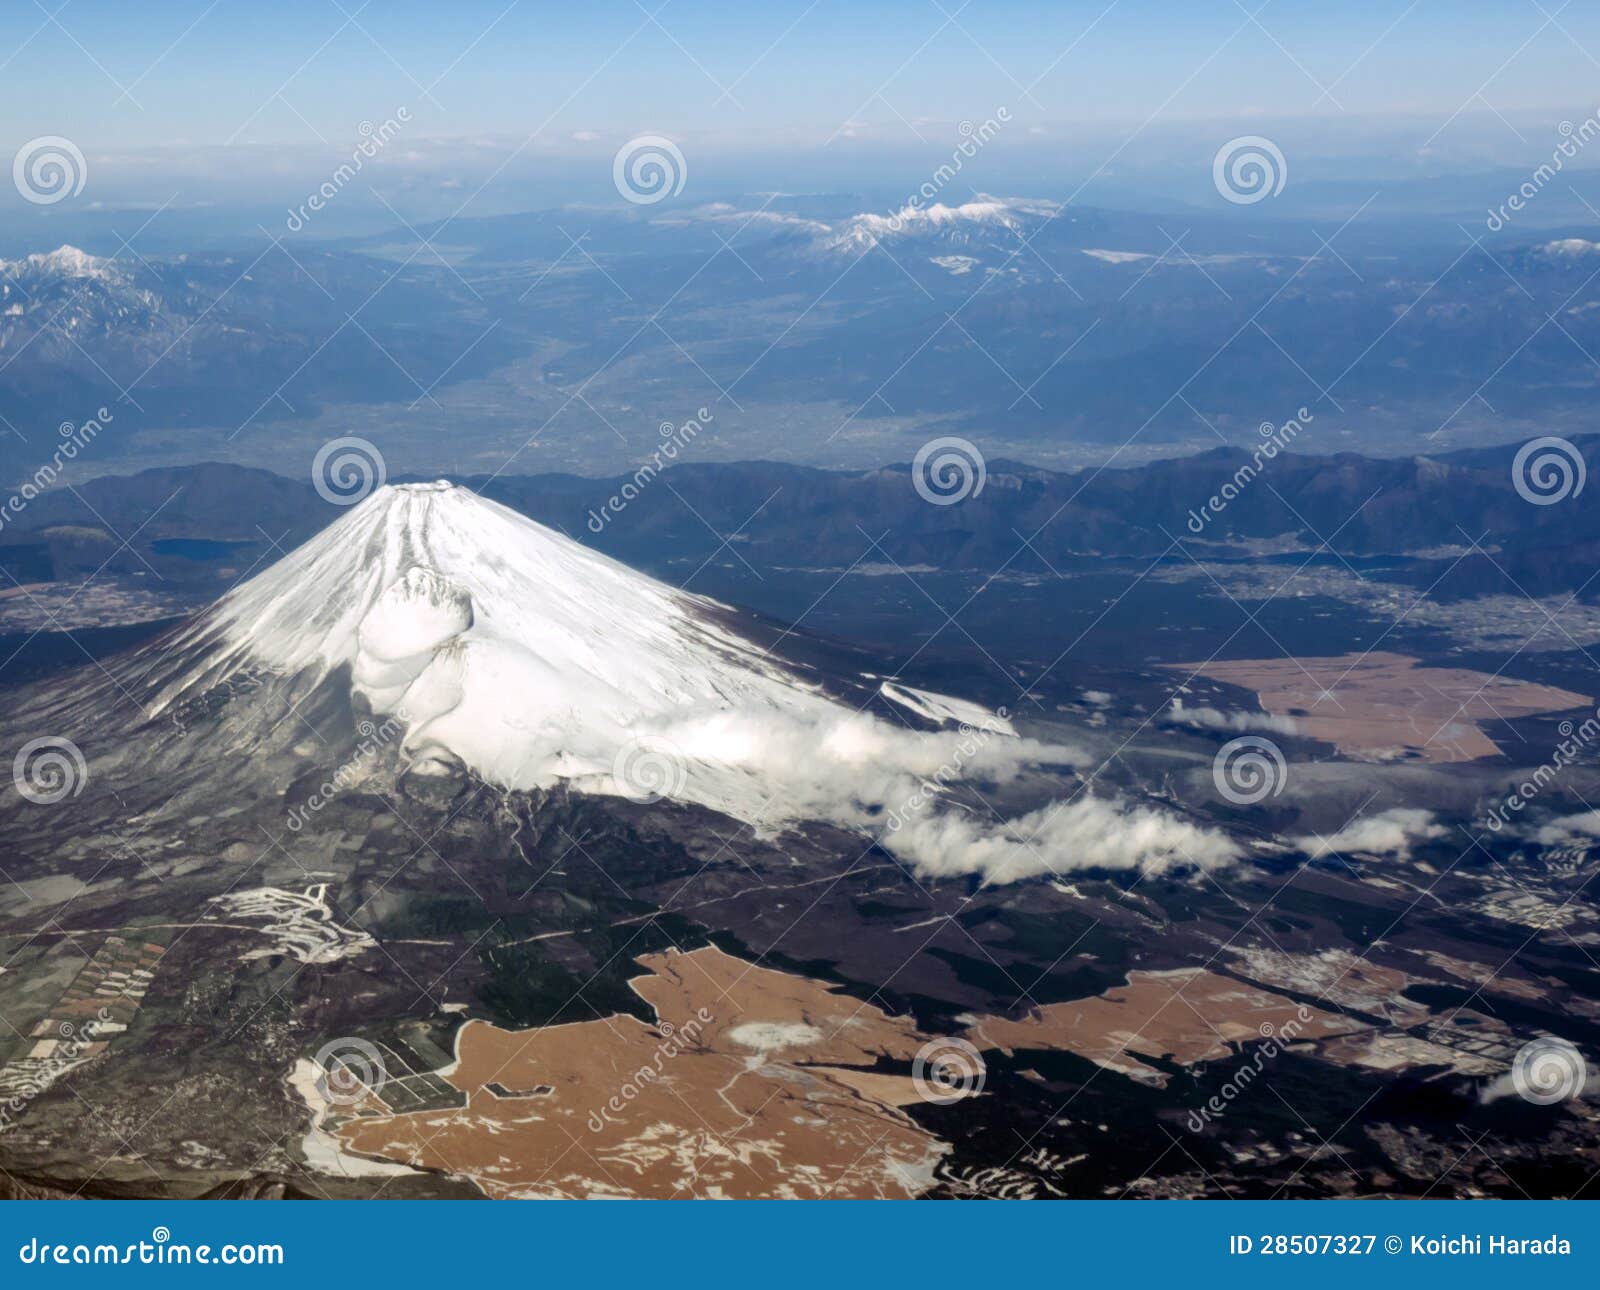 Mt.Fuji stock image. Image of symbol, nature, fuji, basin - 28507327